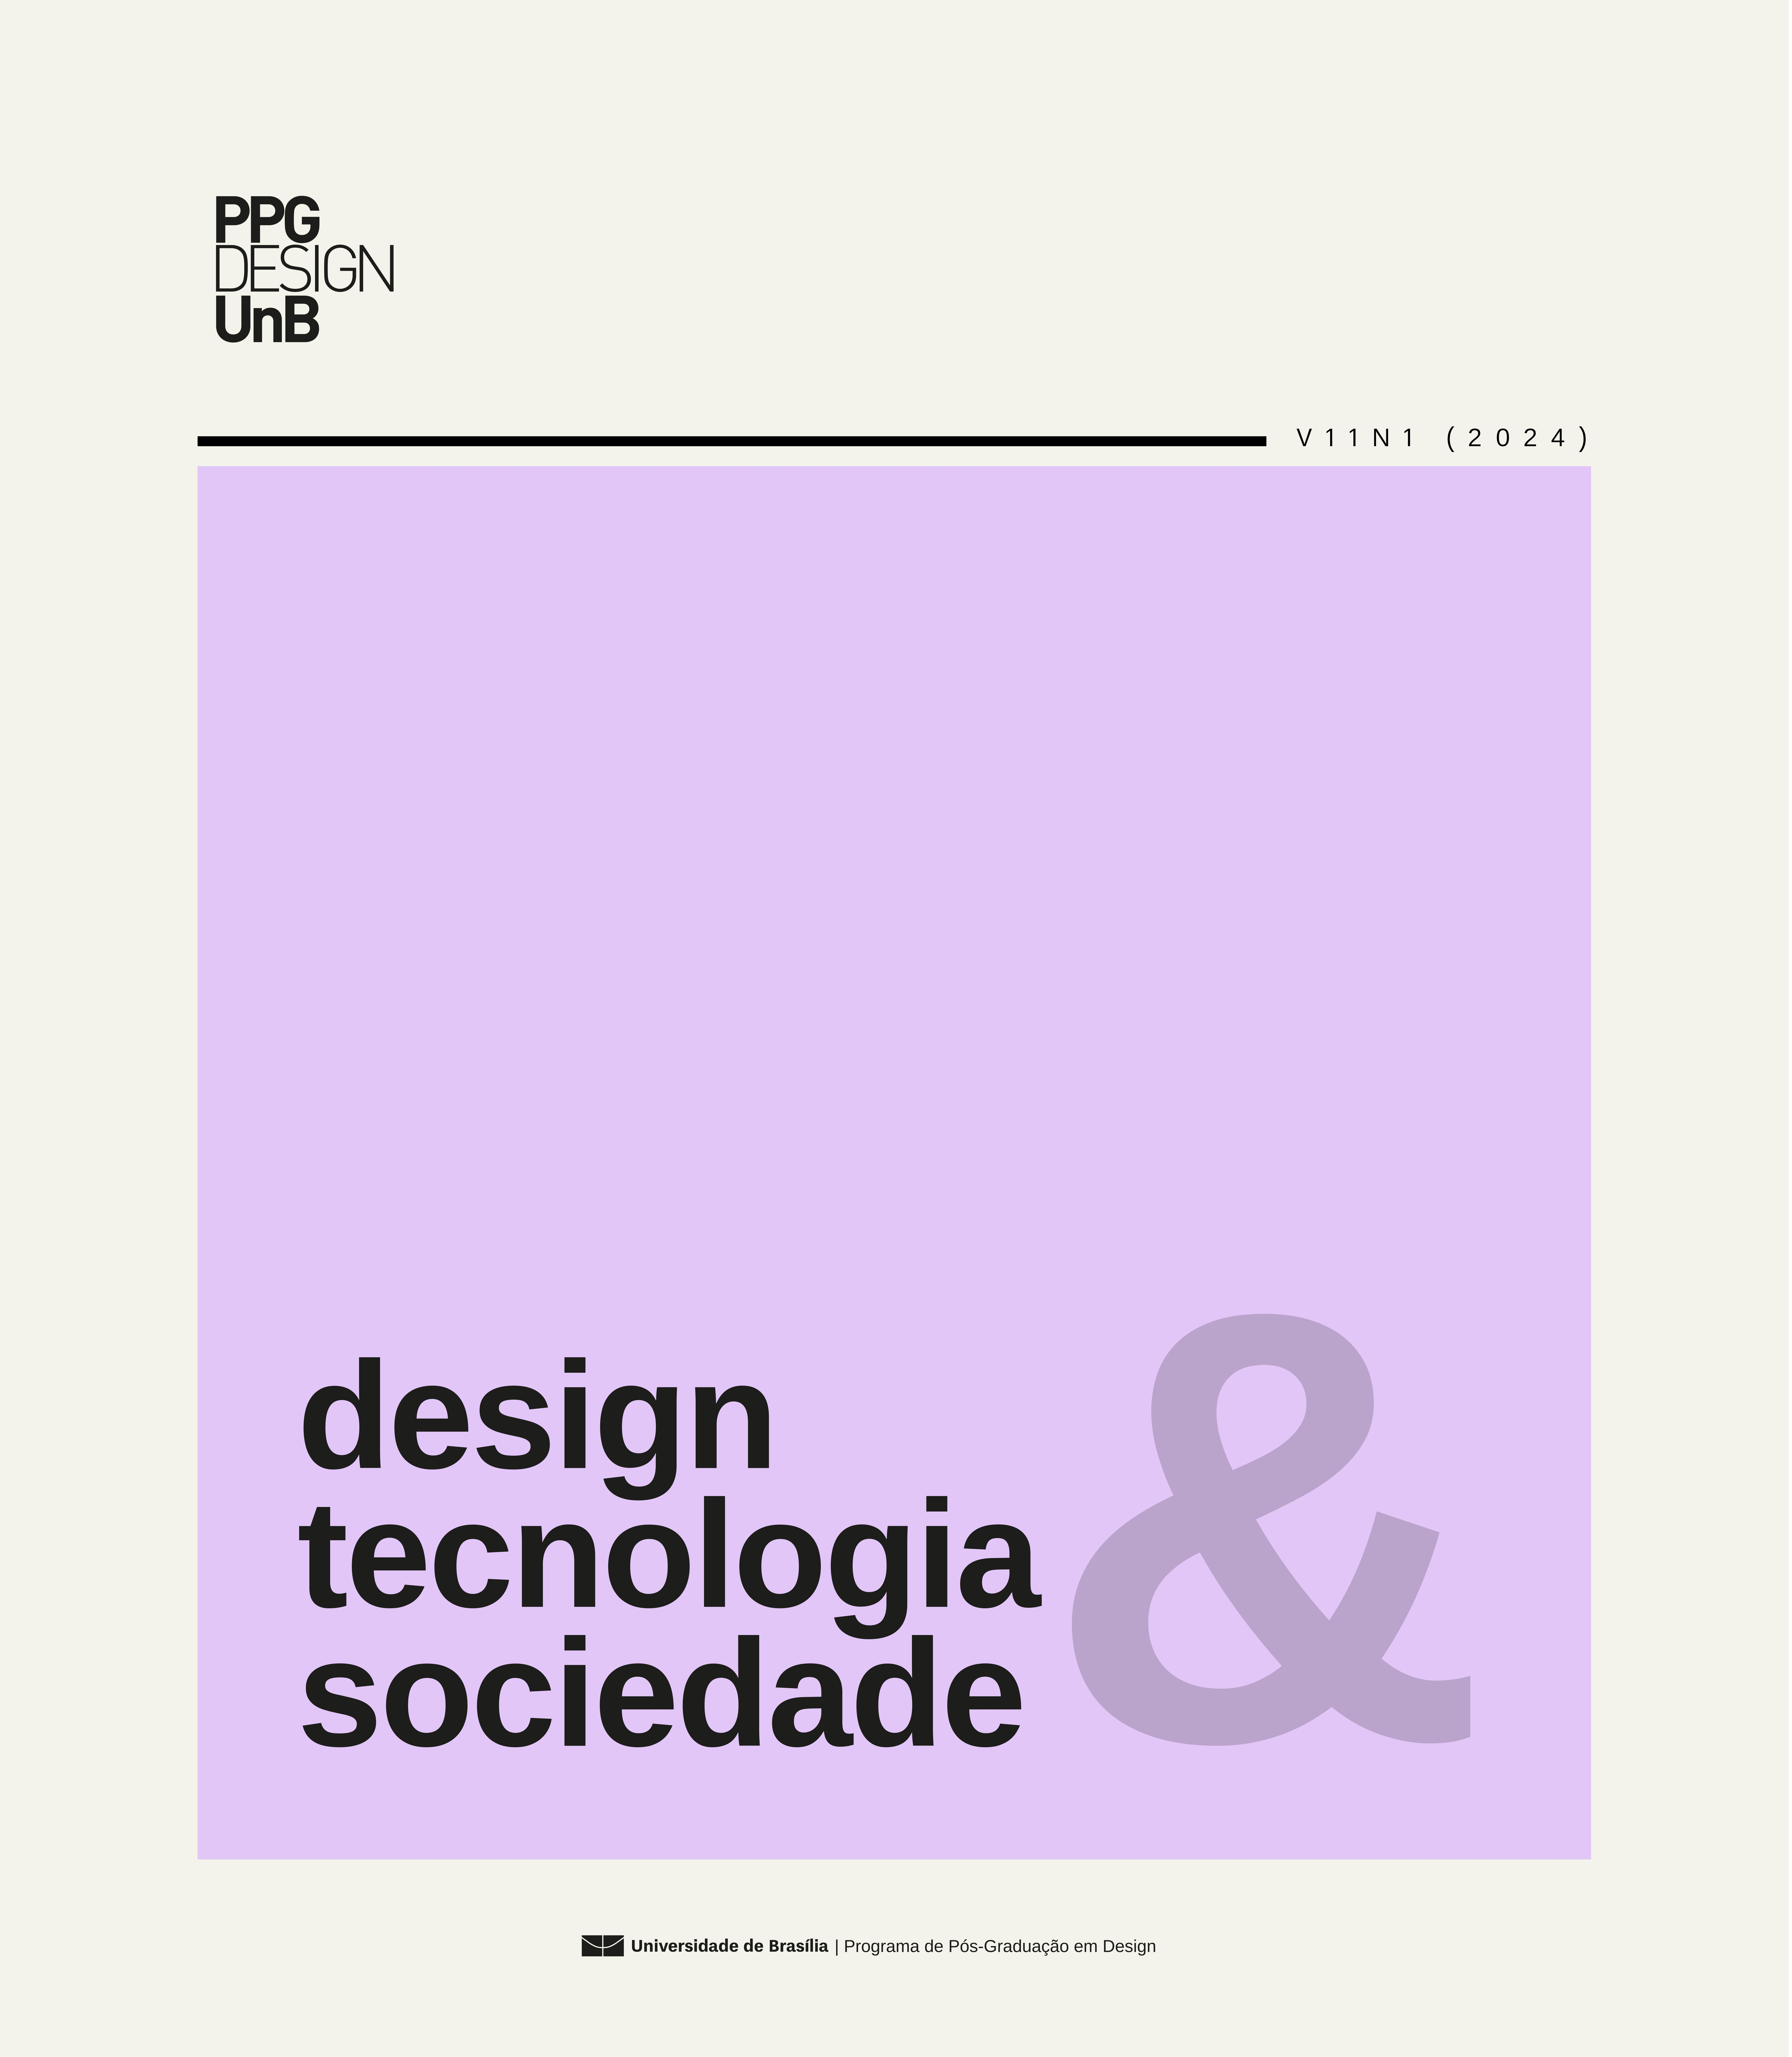 Capa da Revista de Design, Tecnologia e Sociedade Vol.11 N. 1 Ano 2024 na cor lilás